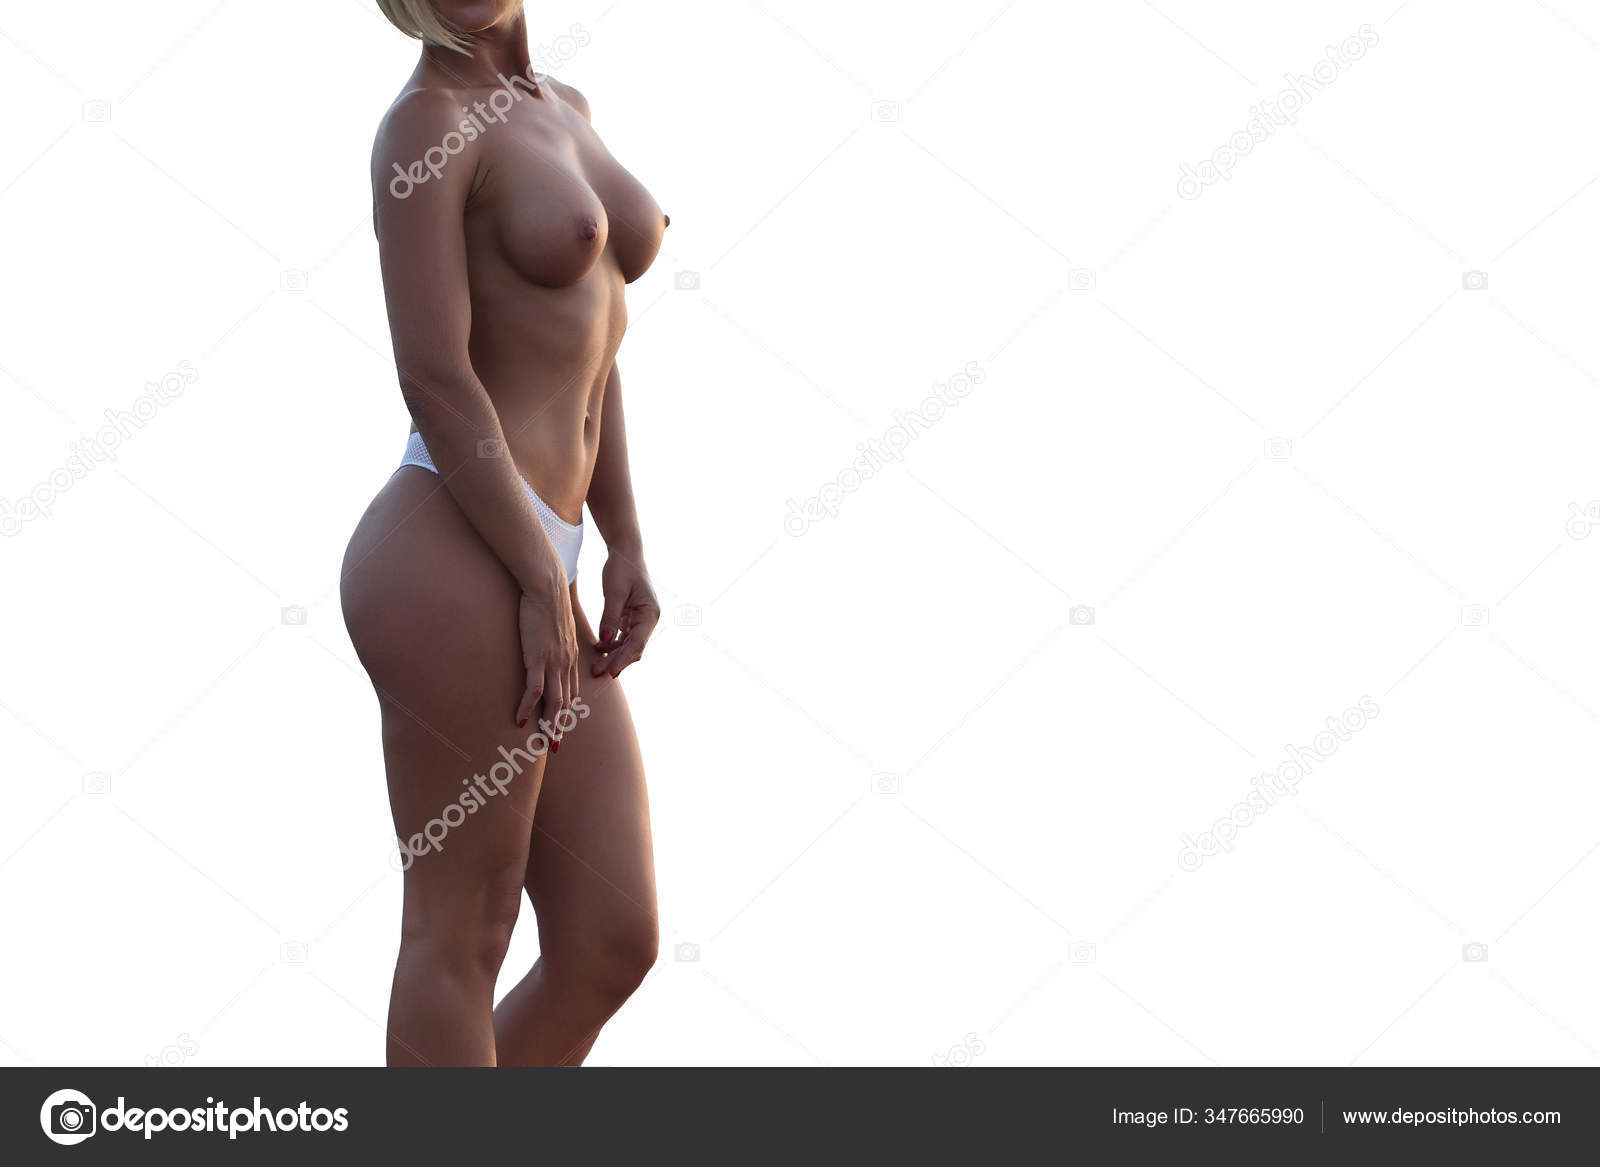 https://st3n.depositphotos.com/2970081/34766/i/1600/depositphotos_347665990-stock-photo-young-sexy-girl-nude-beautiful.jpg